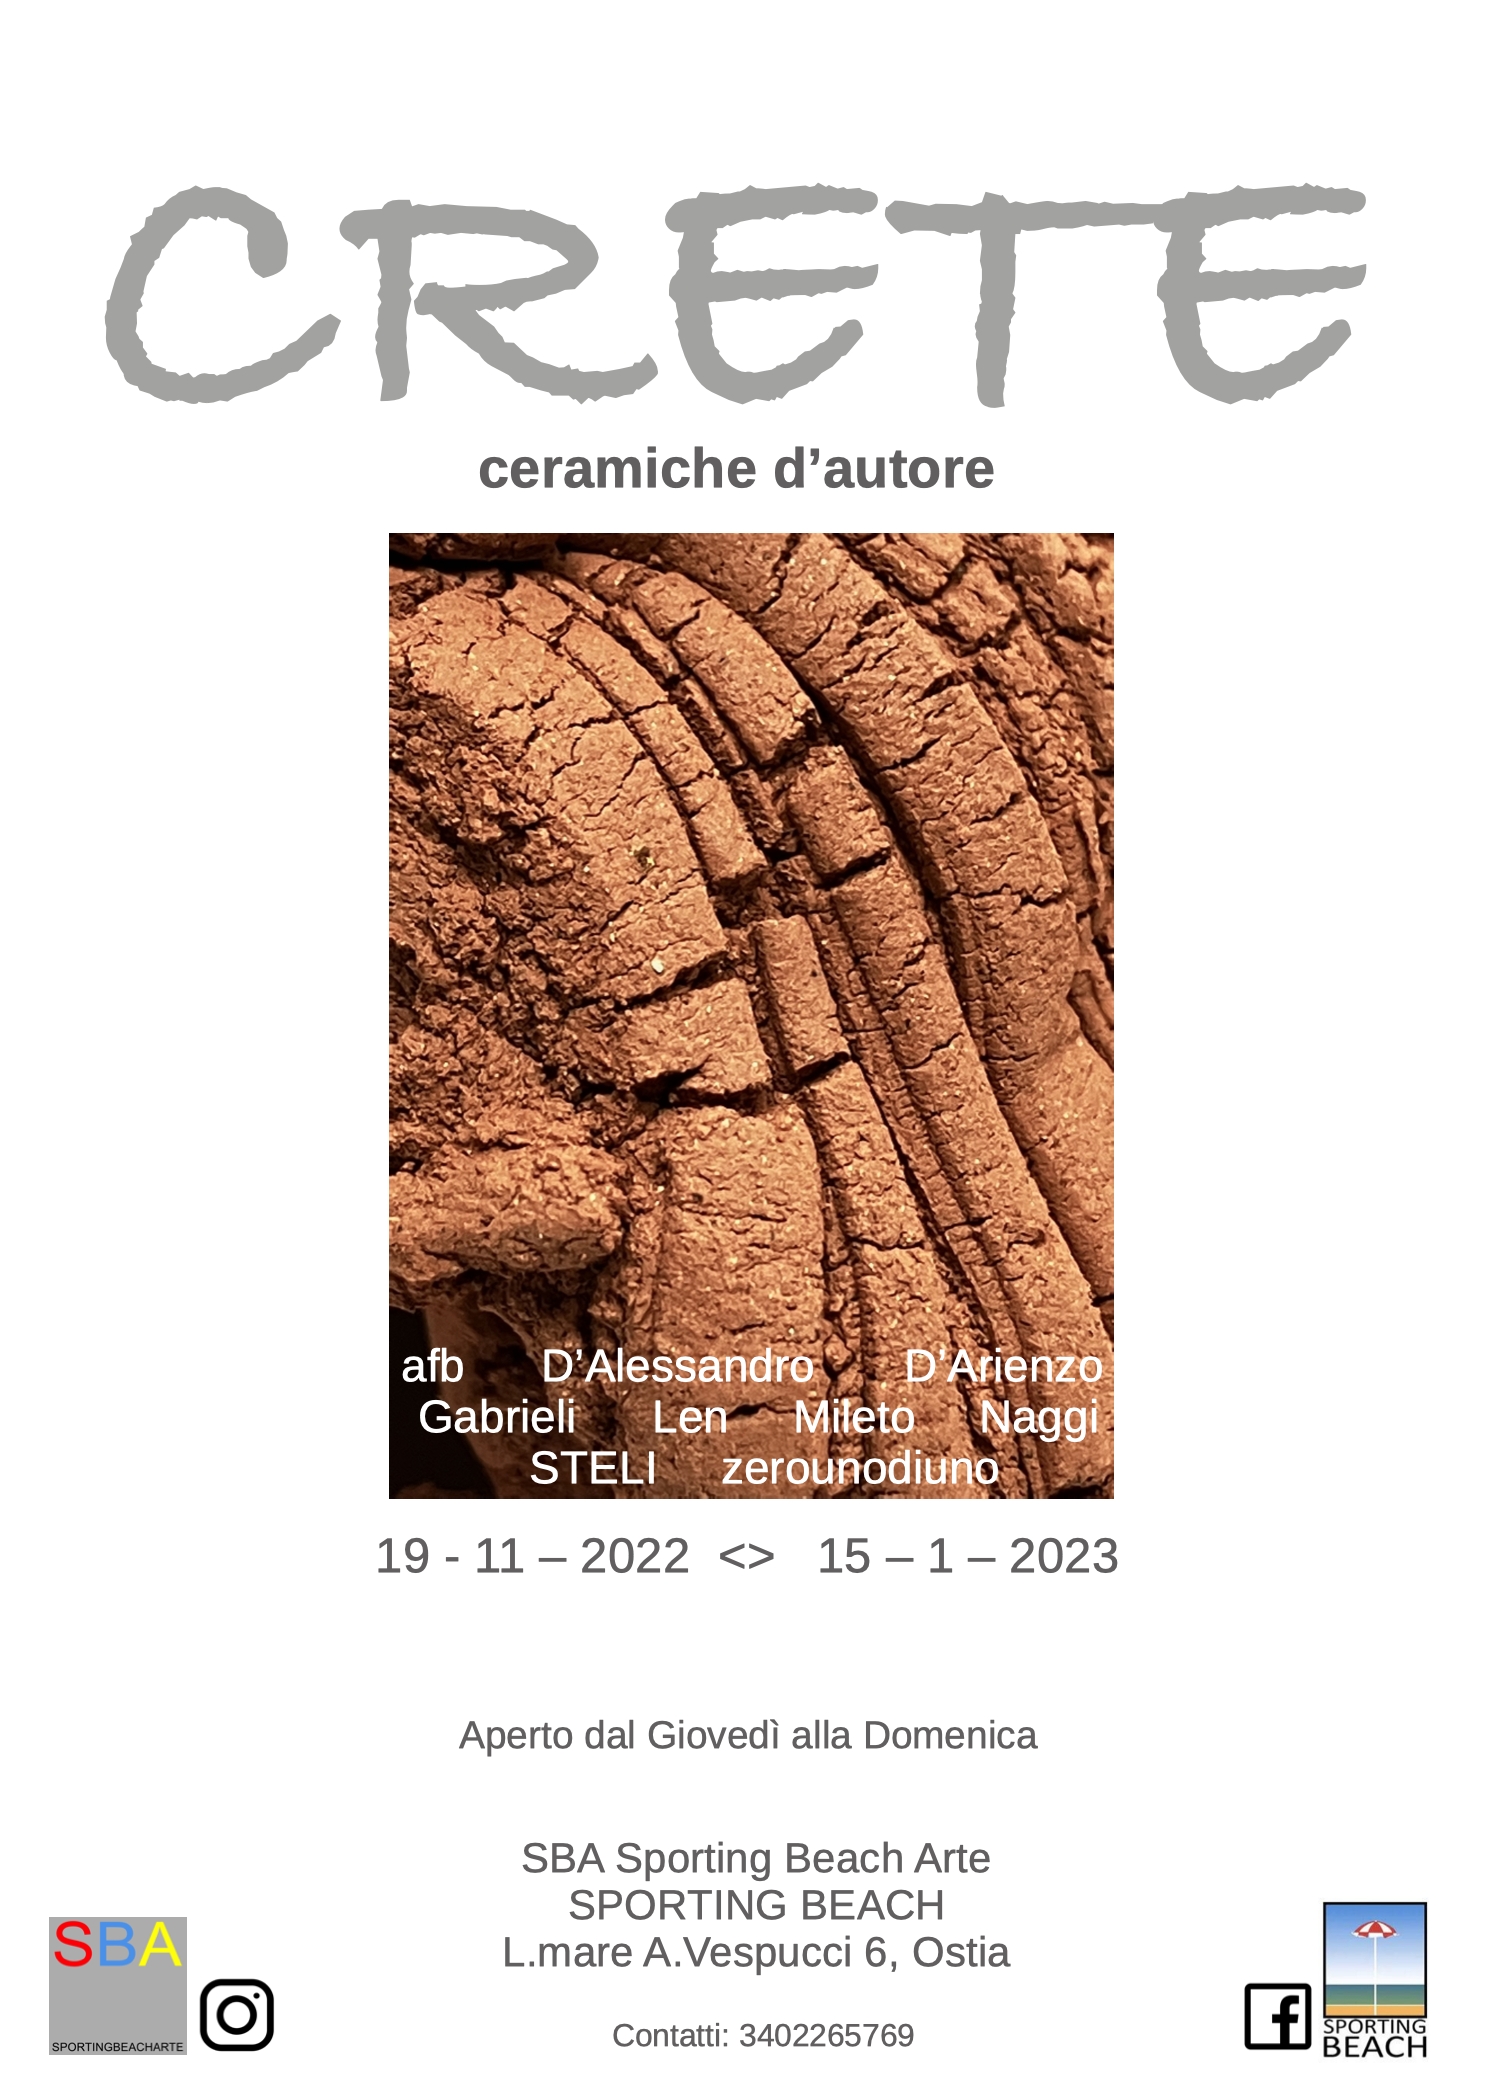 Crete - Ceramiche d'autore